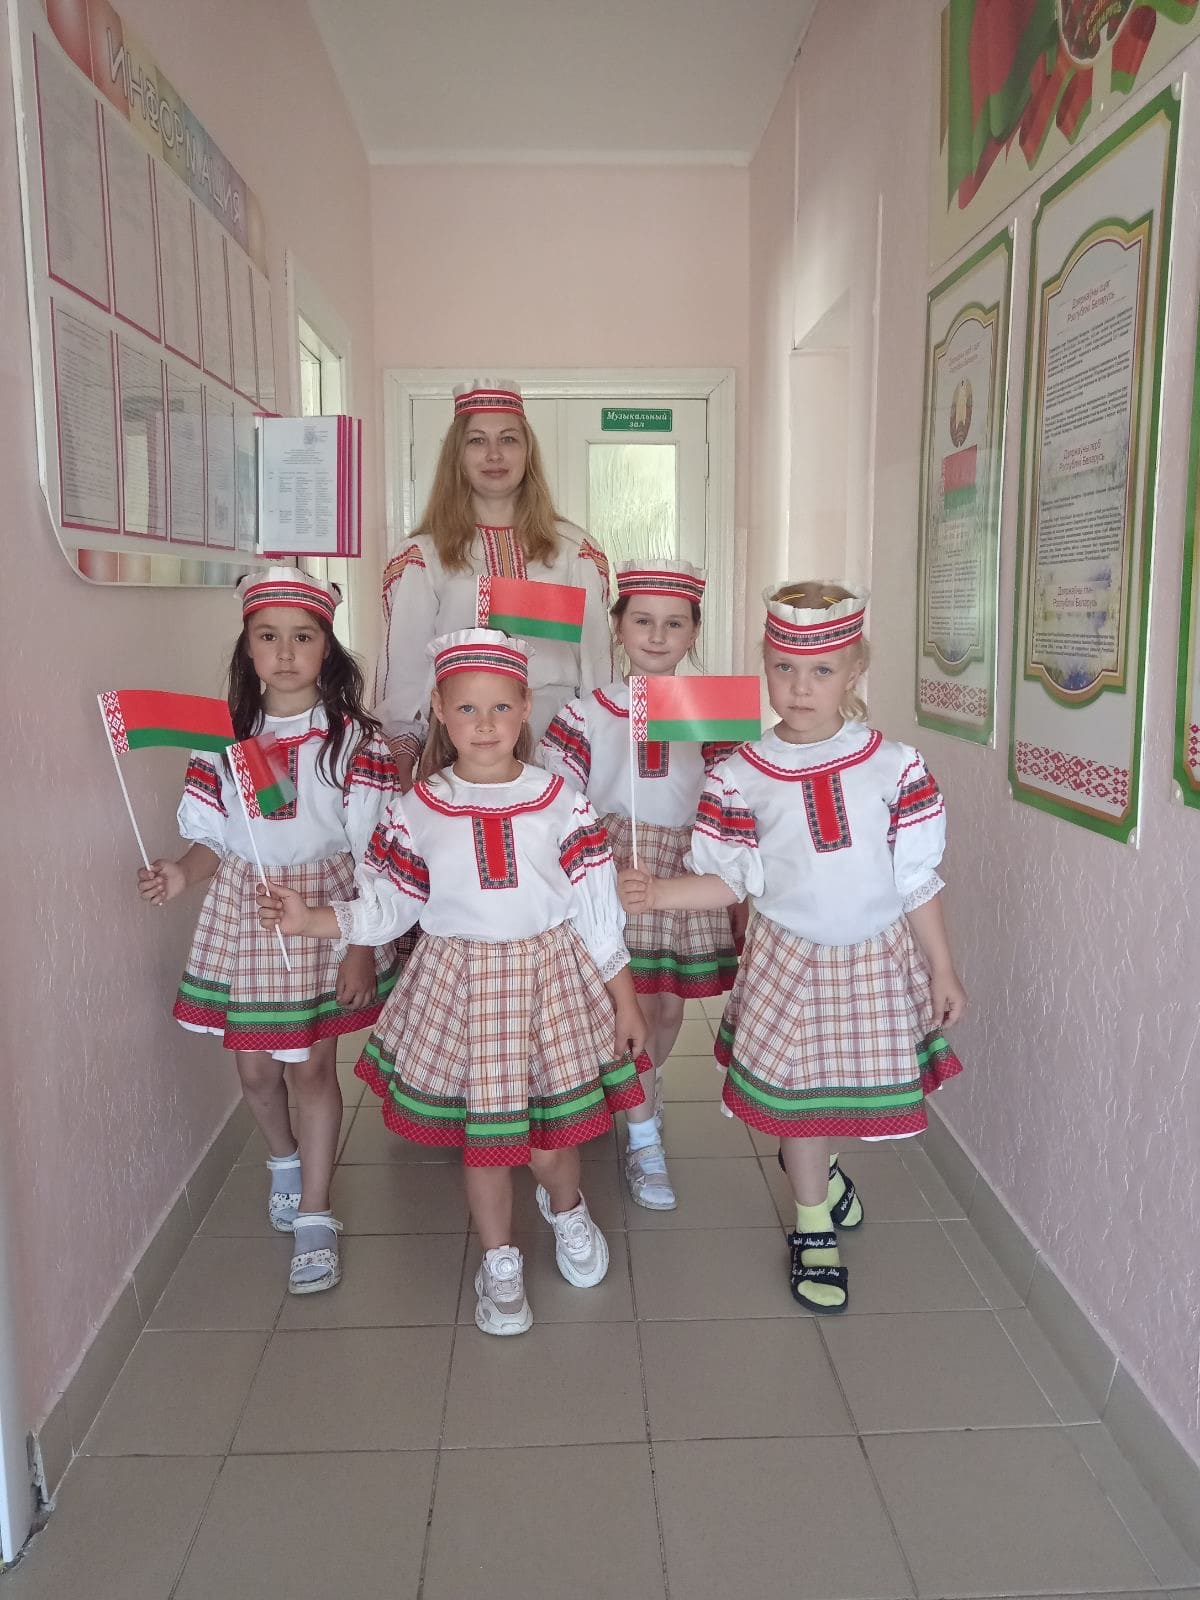 3 июля - День Независимости Республики Беларусь